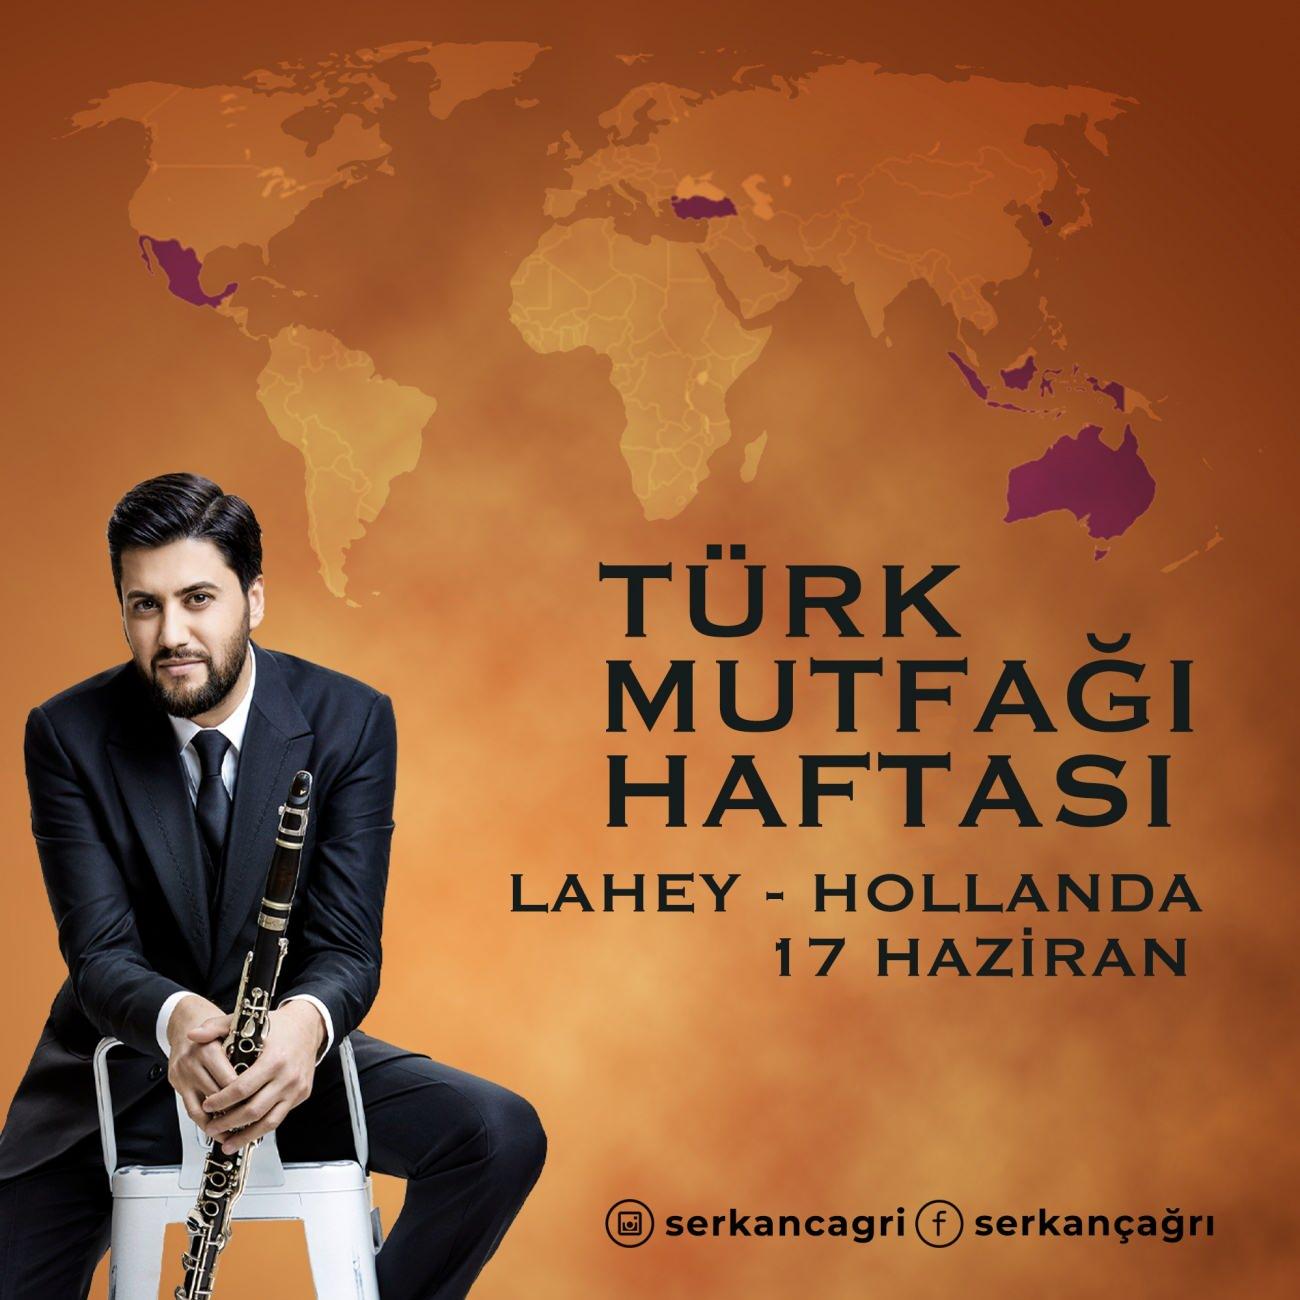 Serkan Çağrı Türk Mutfağı Haftasında Laheyde konser verecek